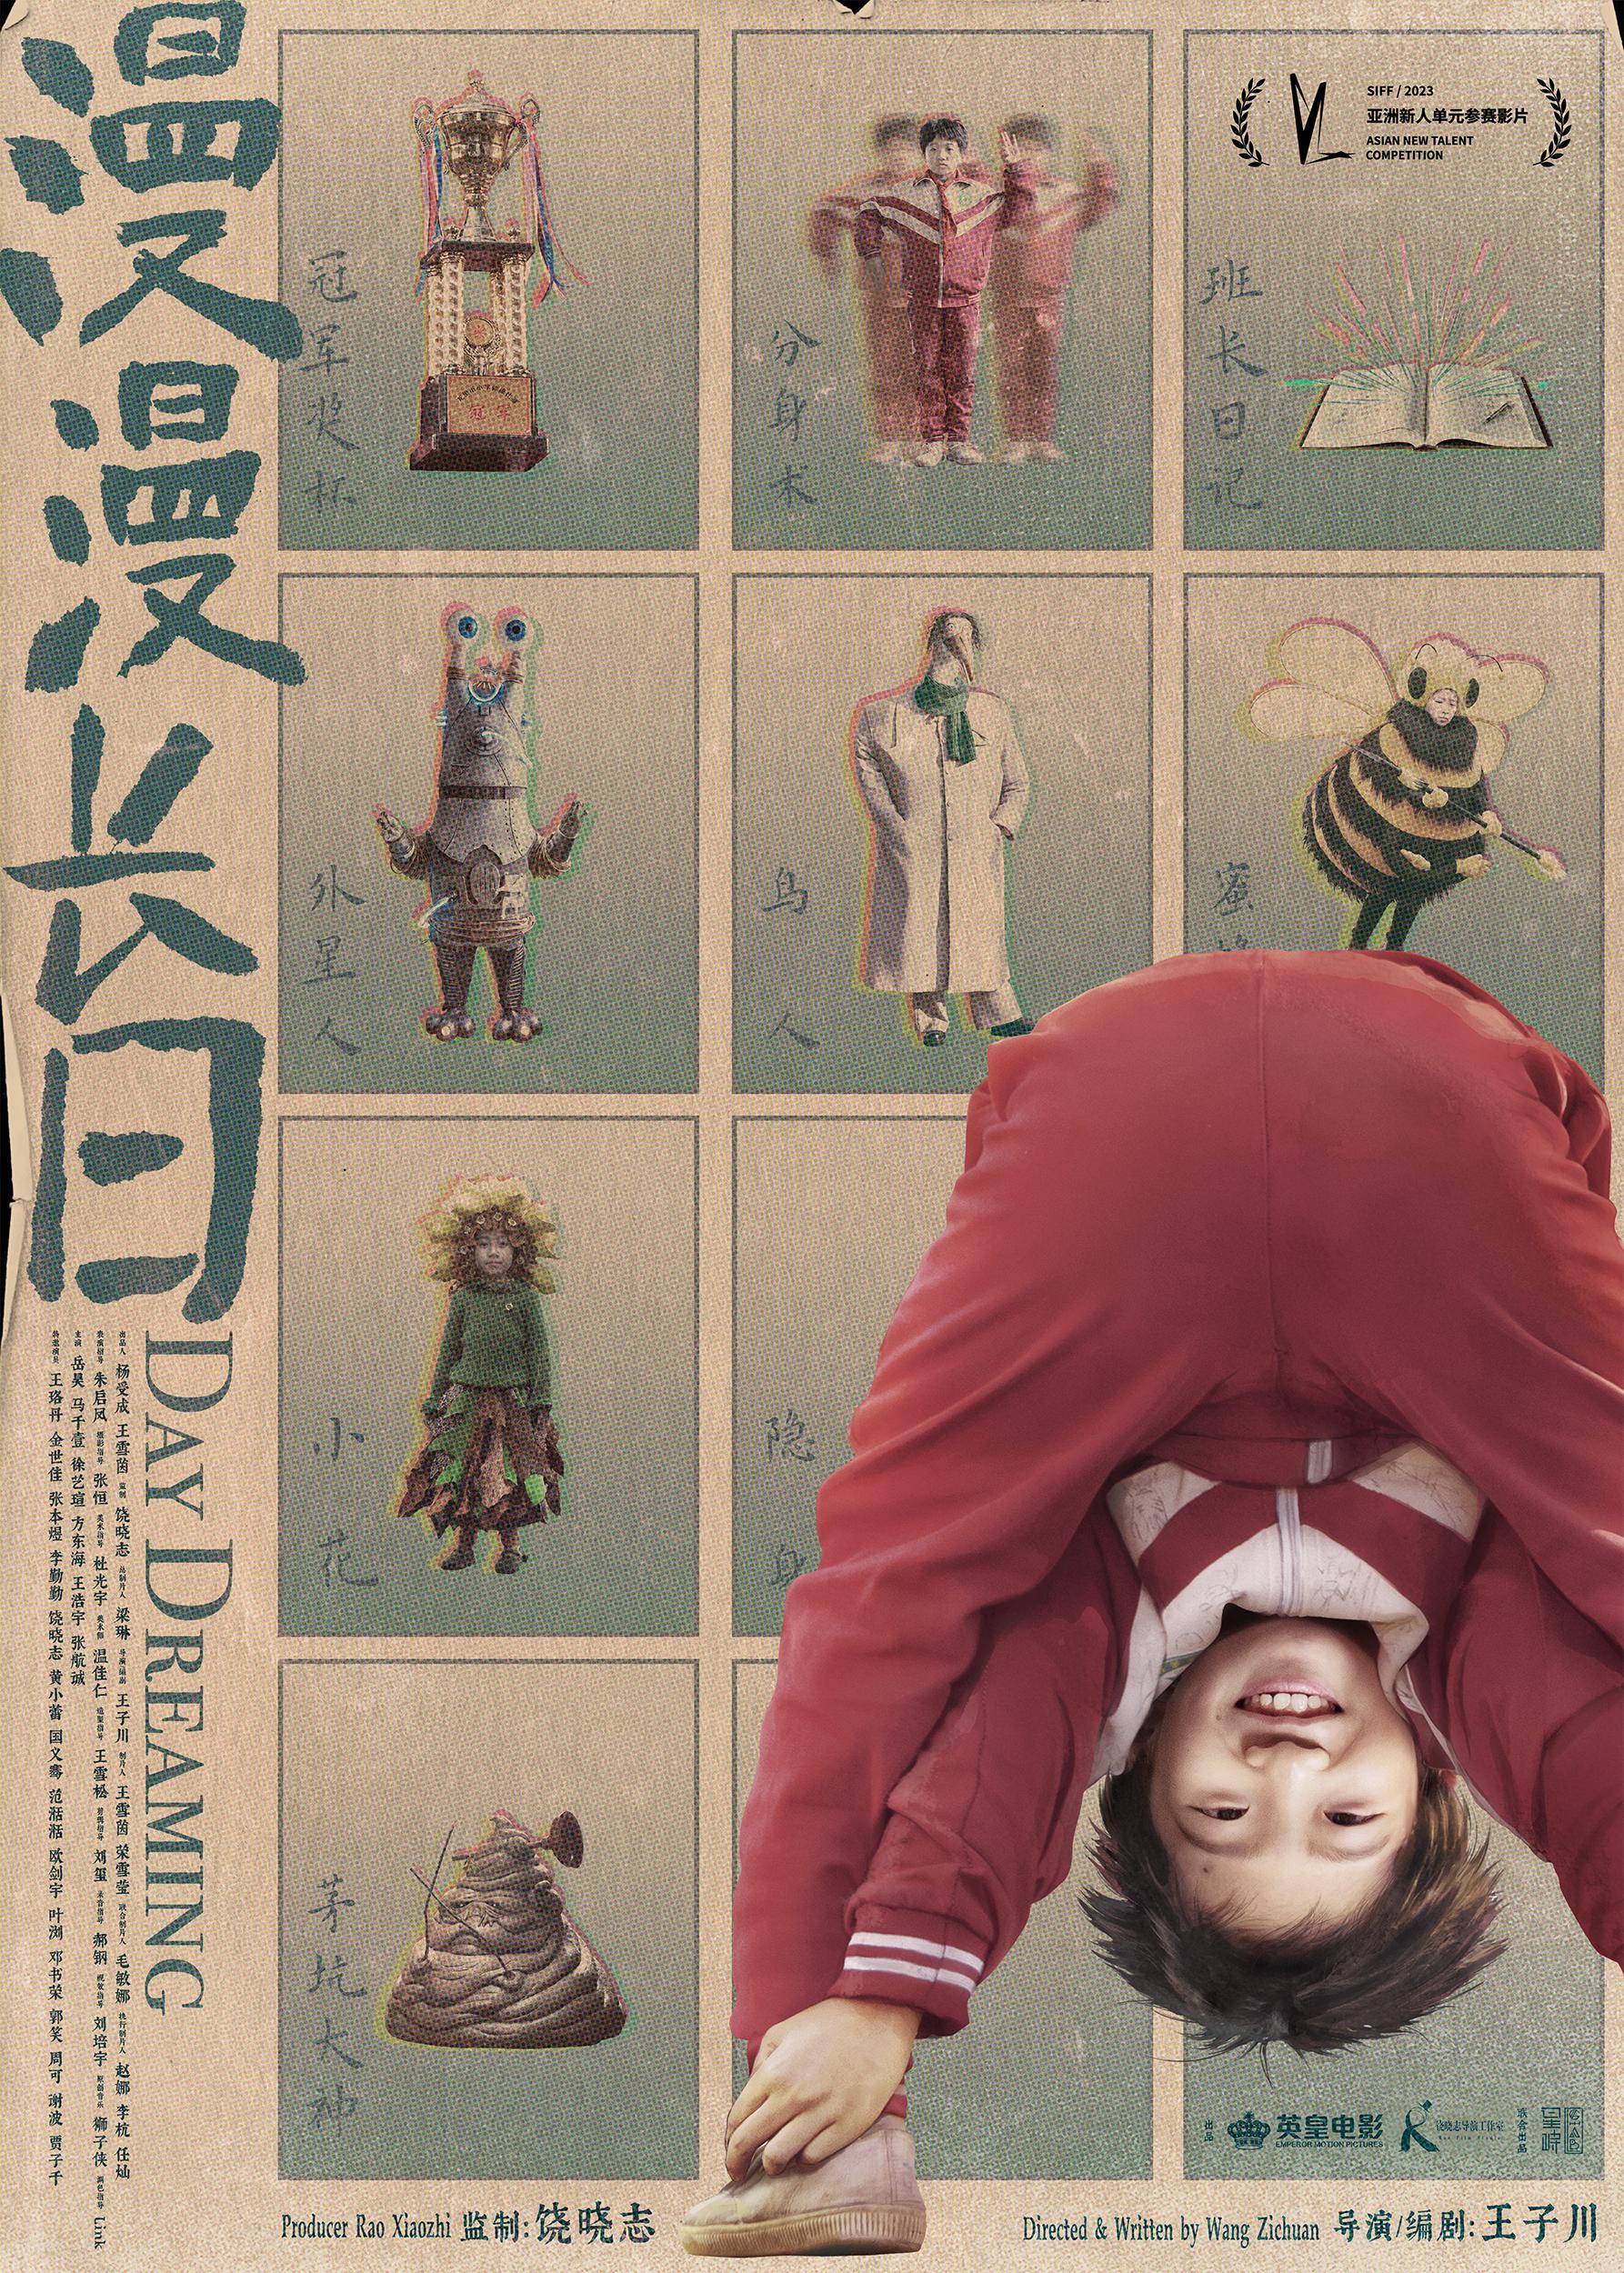 饶晓志担任监制，电影《漫漫长日》发布“怪妙的”海报